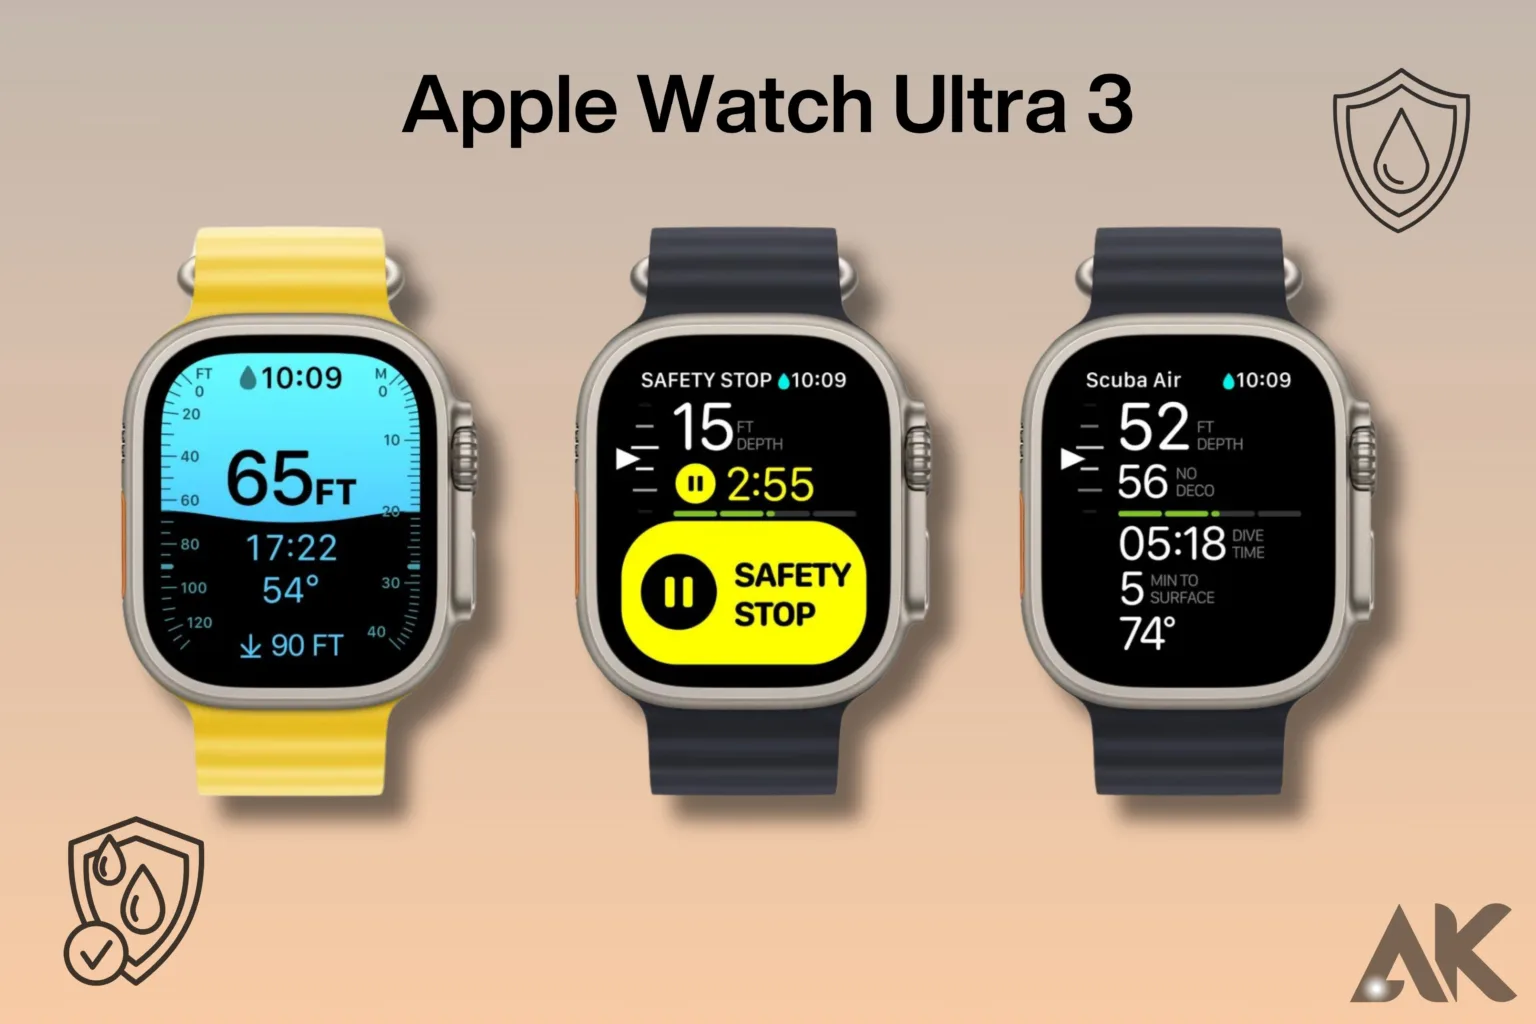 Apple Watch Ultra 3 water resistance